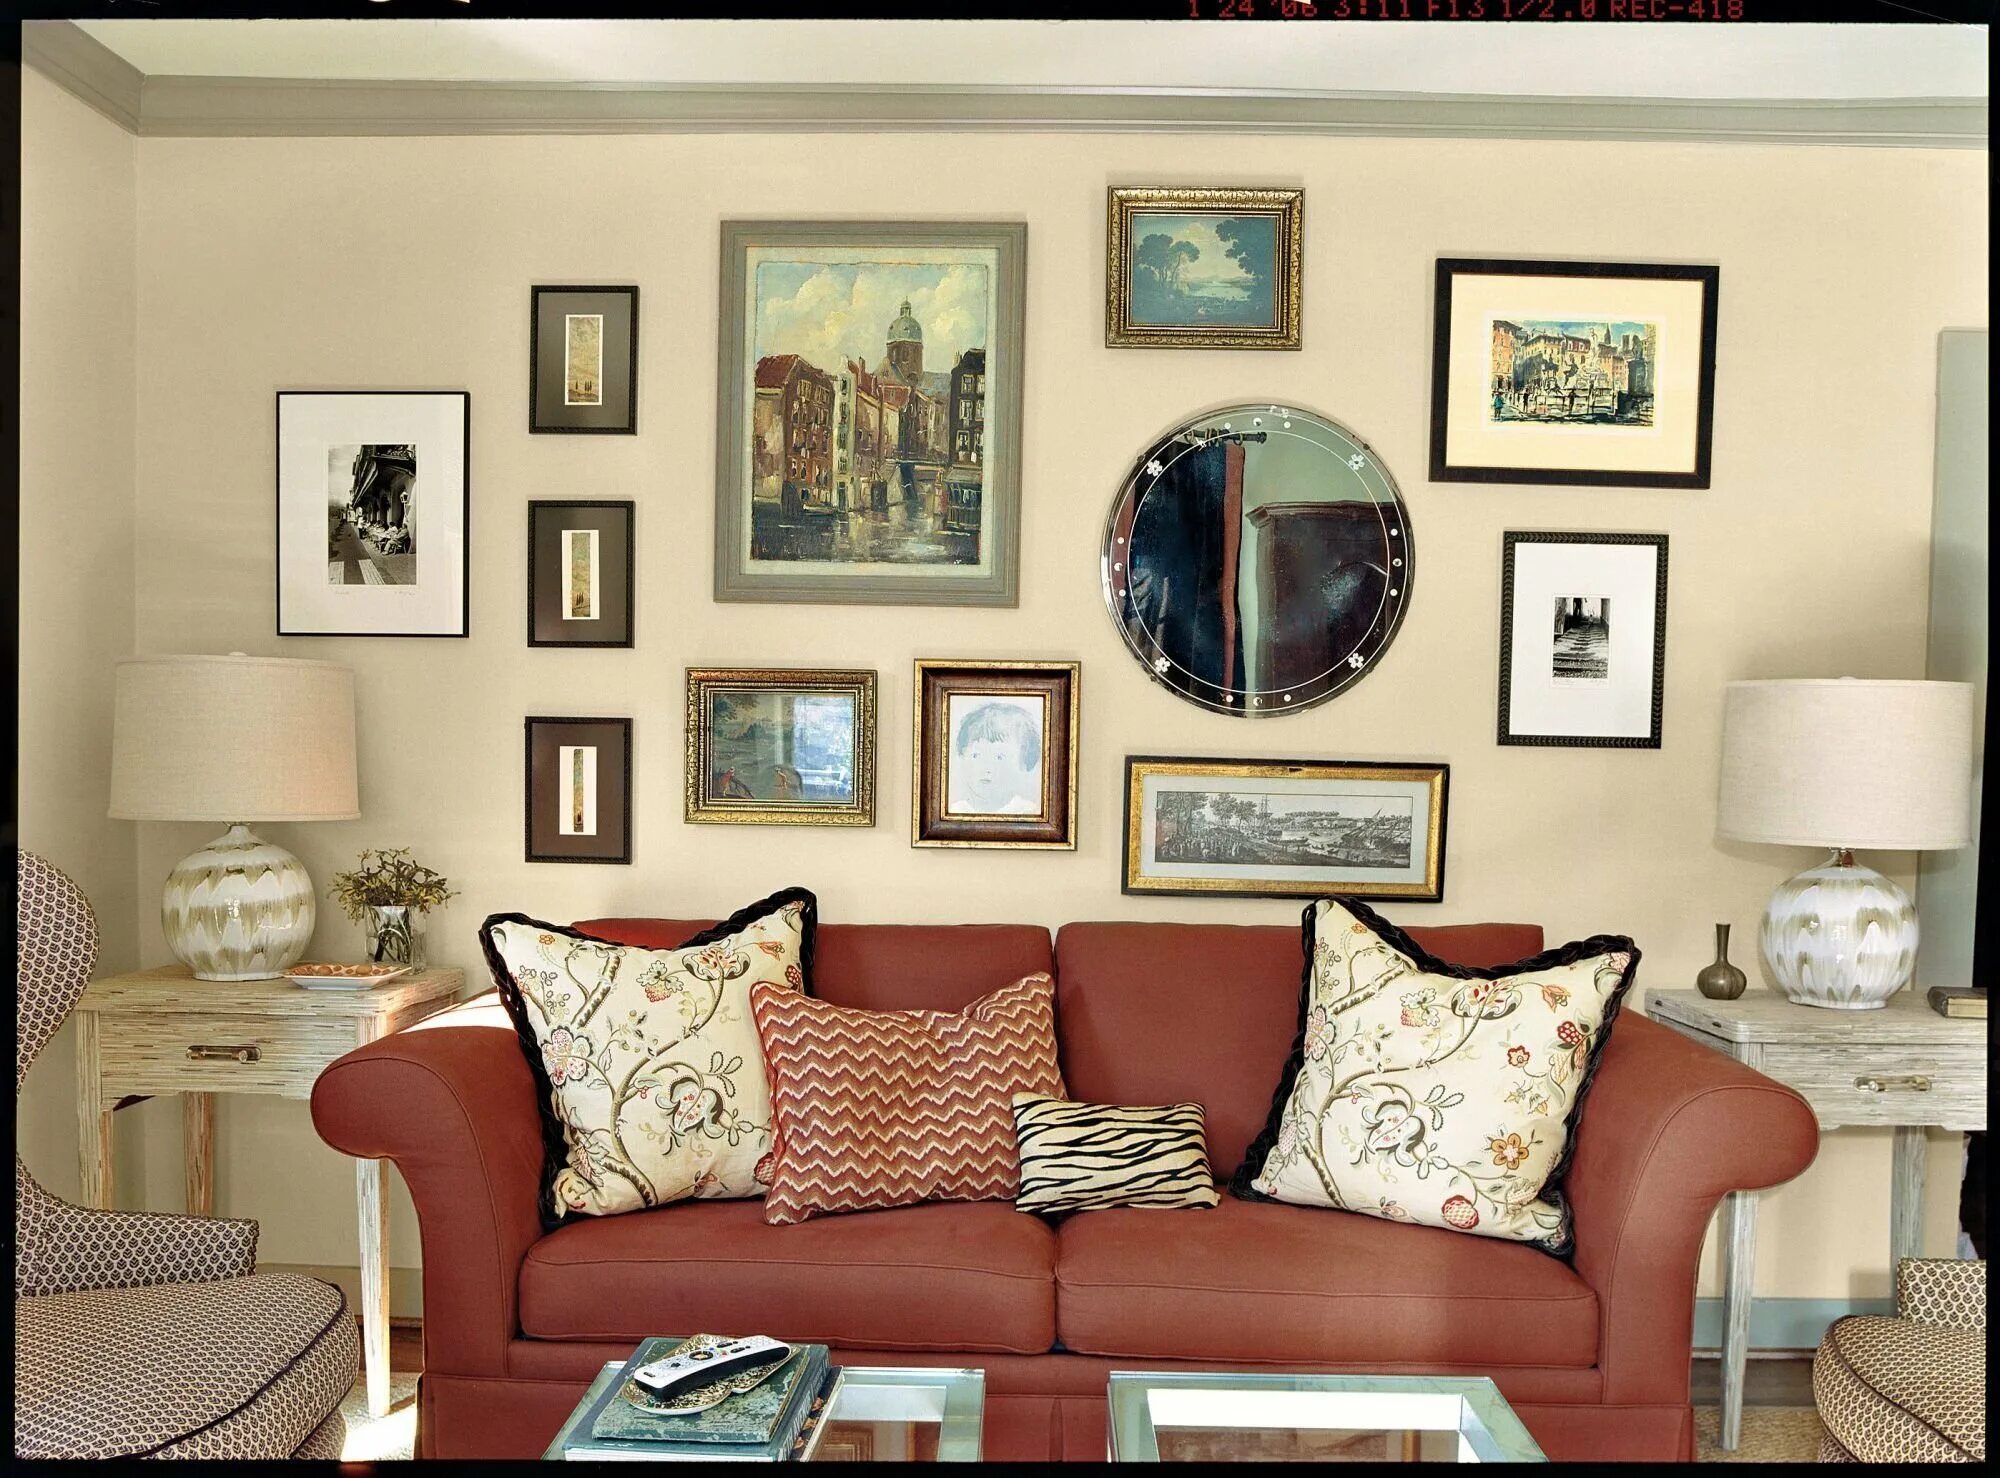 Какой повесить. Картины для интерьера гостиной. Картины на стене в интерьере. Фоторамки в интерьере гостиной. Картины над диваном в гостиной.